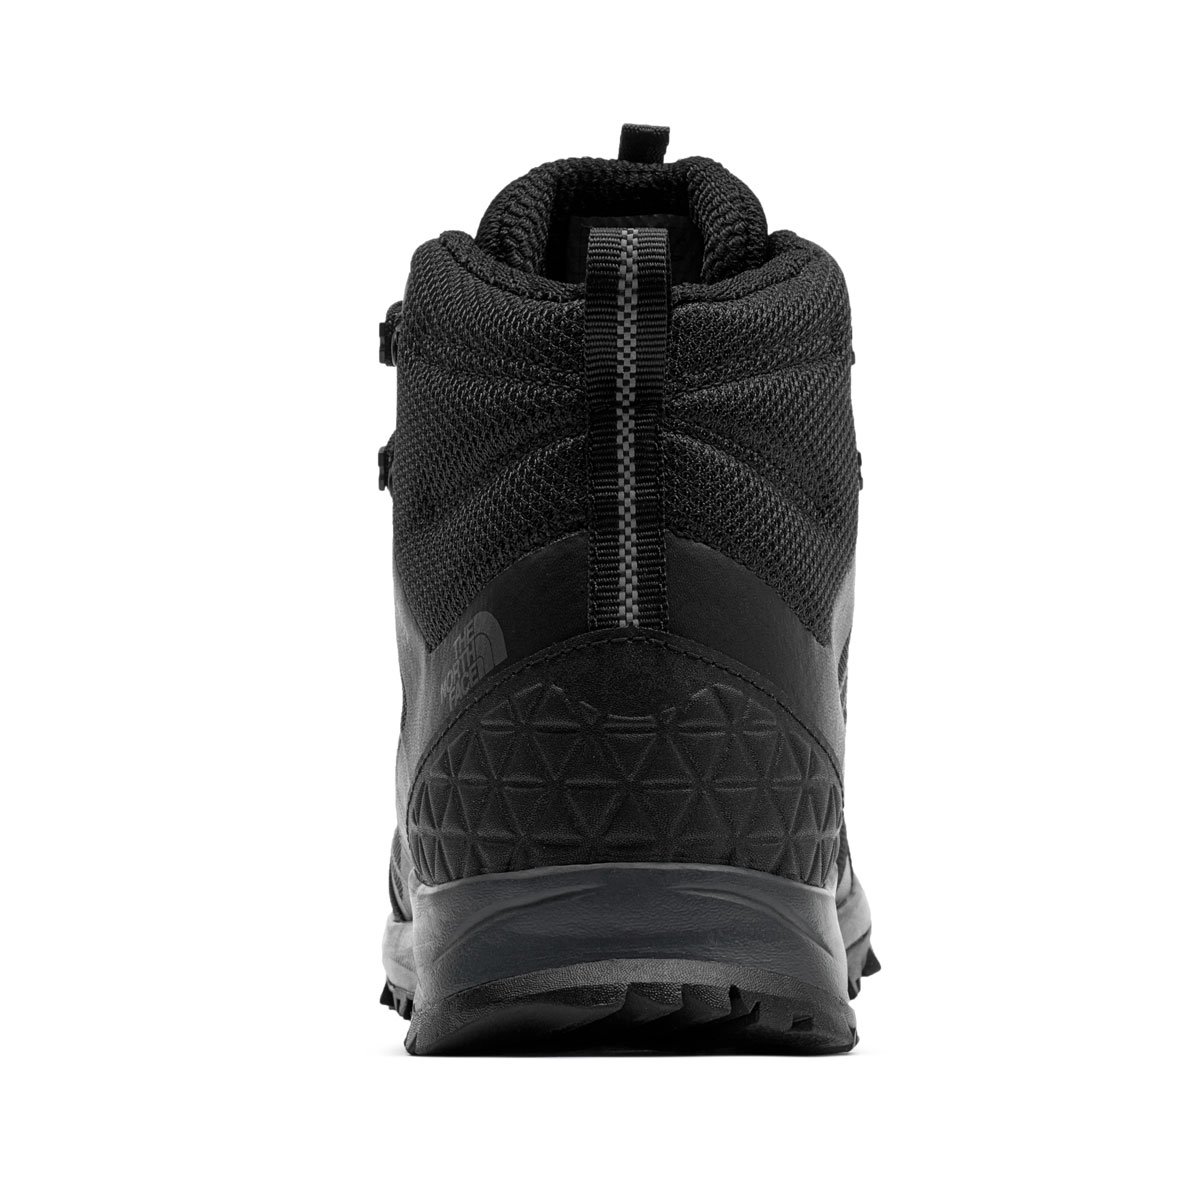 The North Face Litewave Fastpack II Mid Waterproof Мъжки спортни обувки NF0A47HECA01